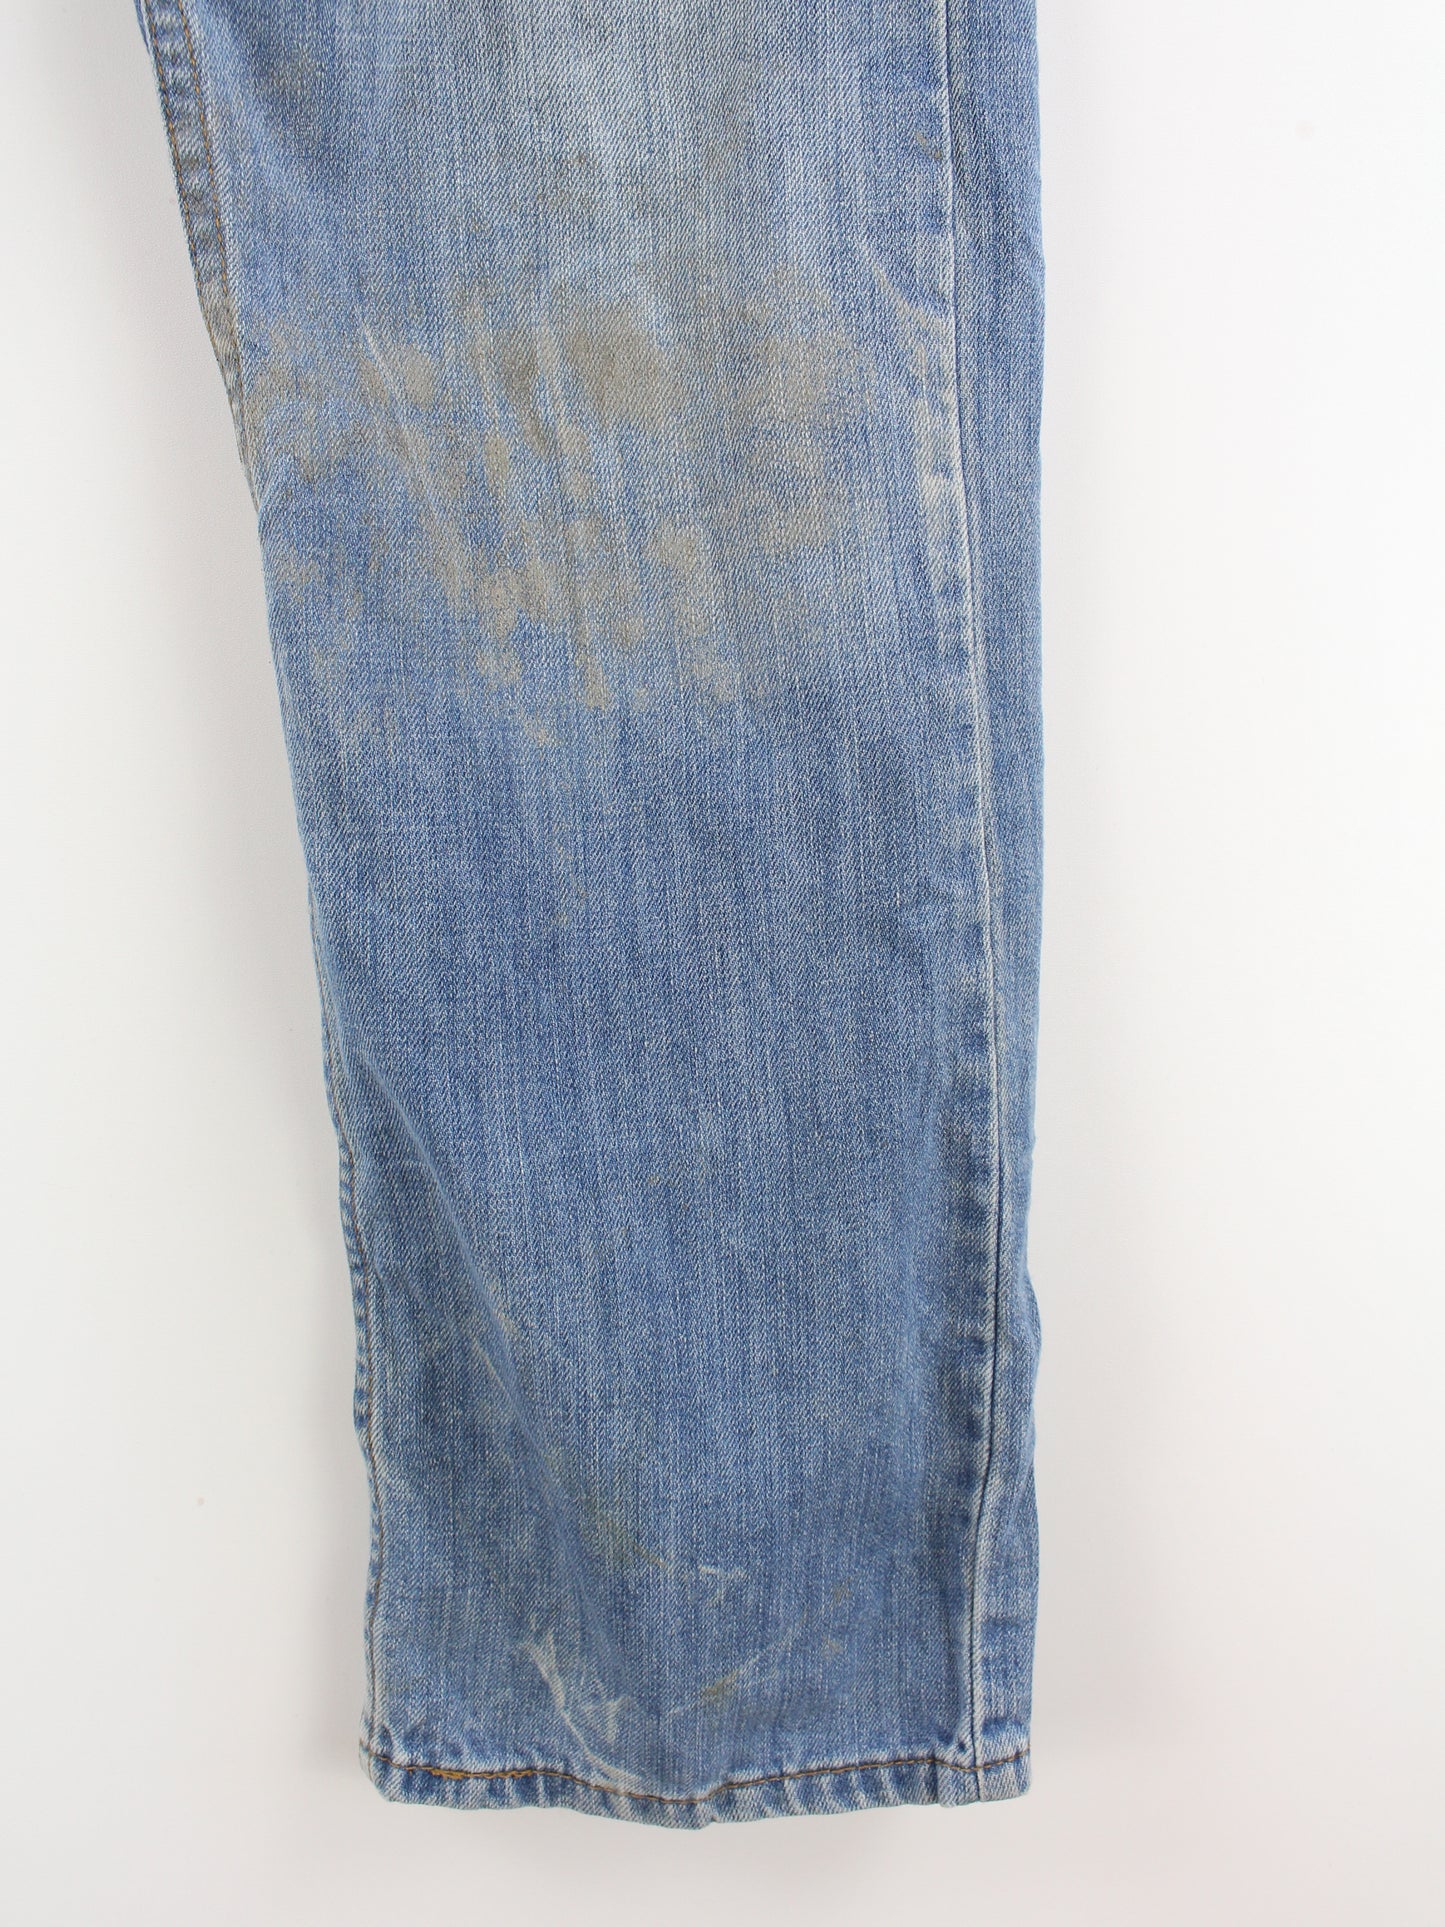 Levi's 514 Jeans Blau W32 L30